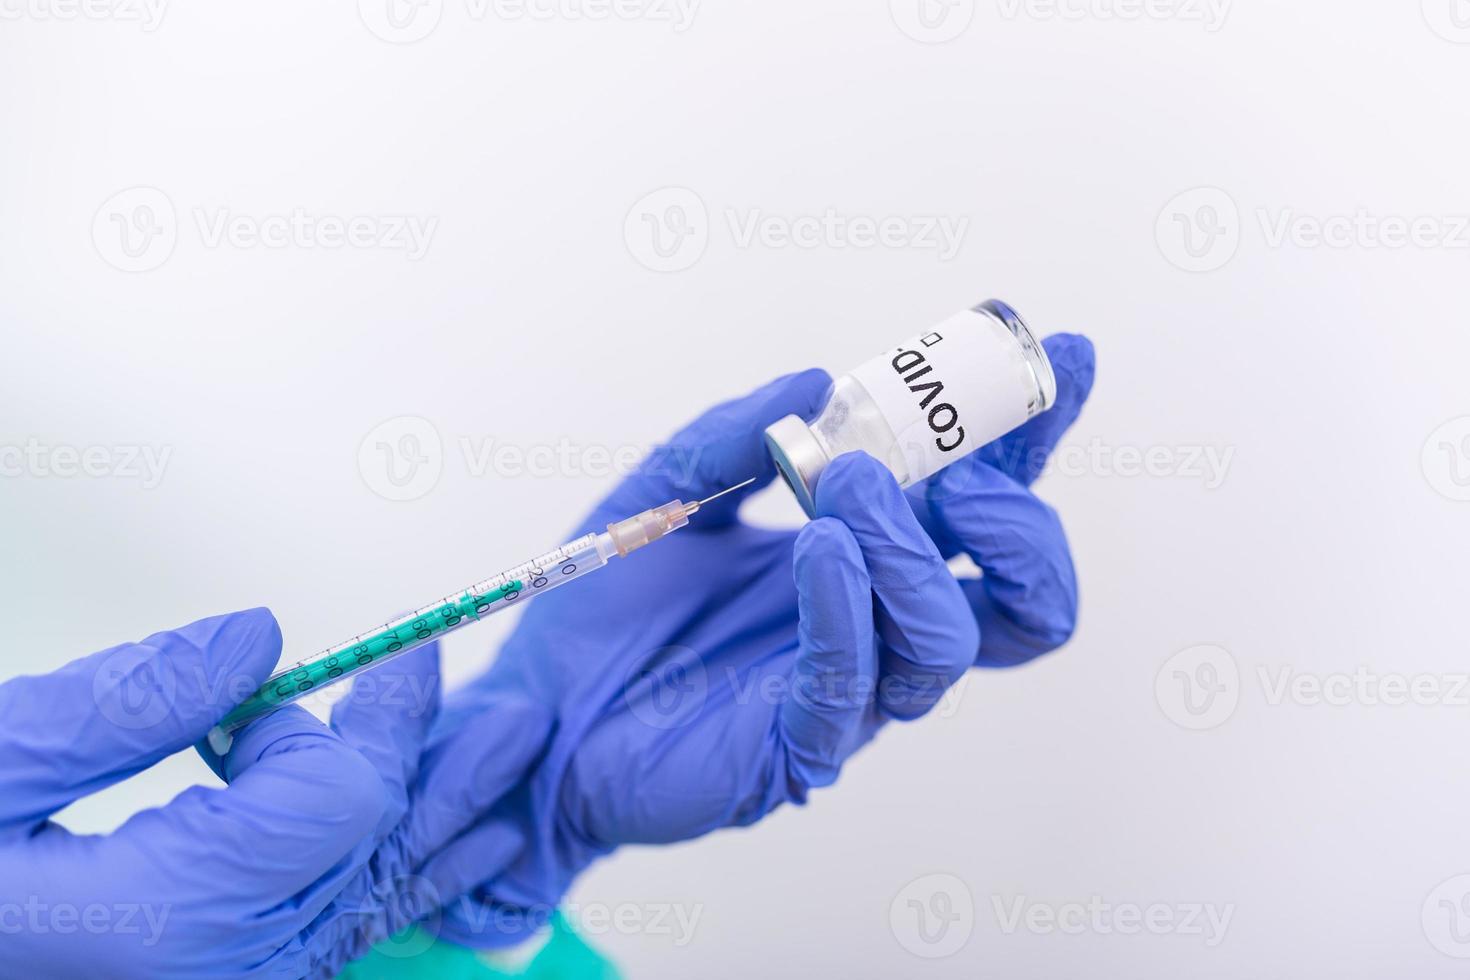 médico, enfermero o científico mano en guantes de nitrilo azul que sostienen la vacuna contra la gripe, el sarampión, el coronavirus covid-19 para la vacunación de bebés y adultos, la medicina y el concepto de drogas foto